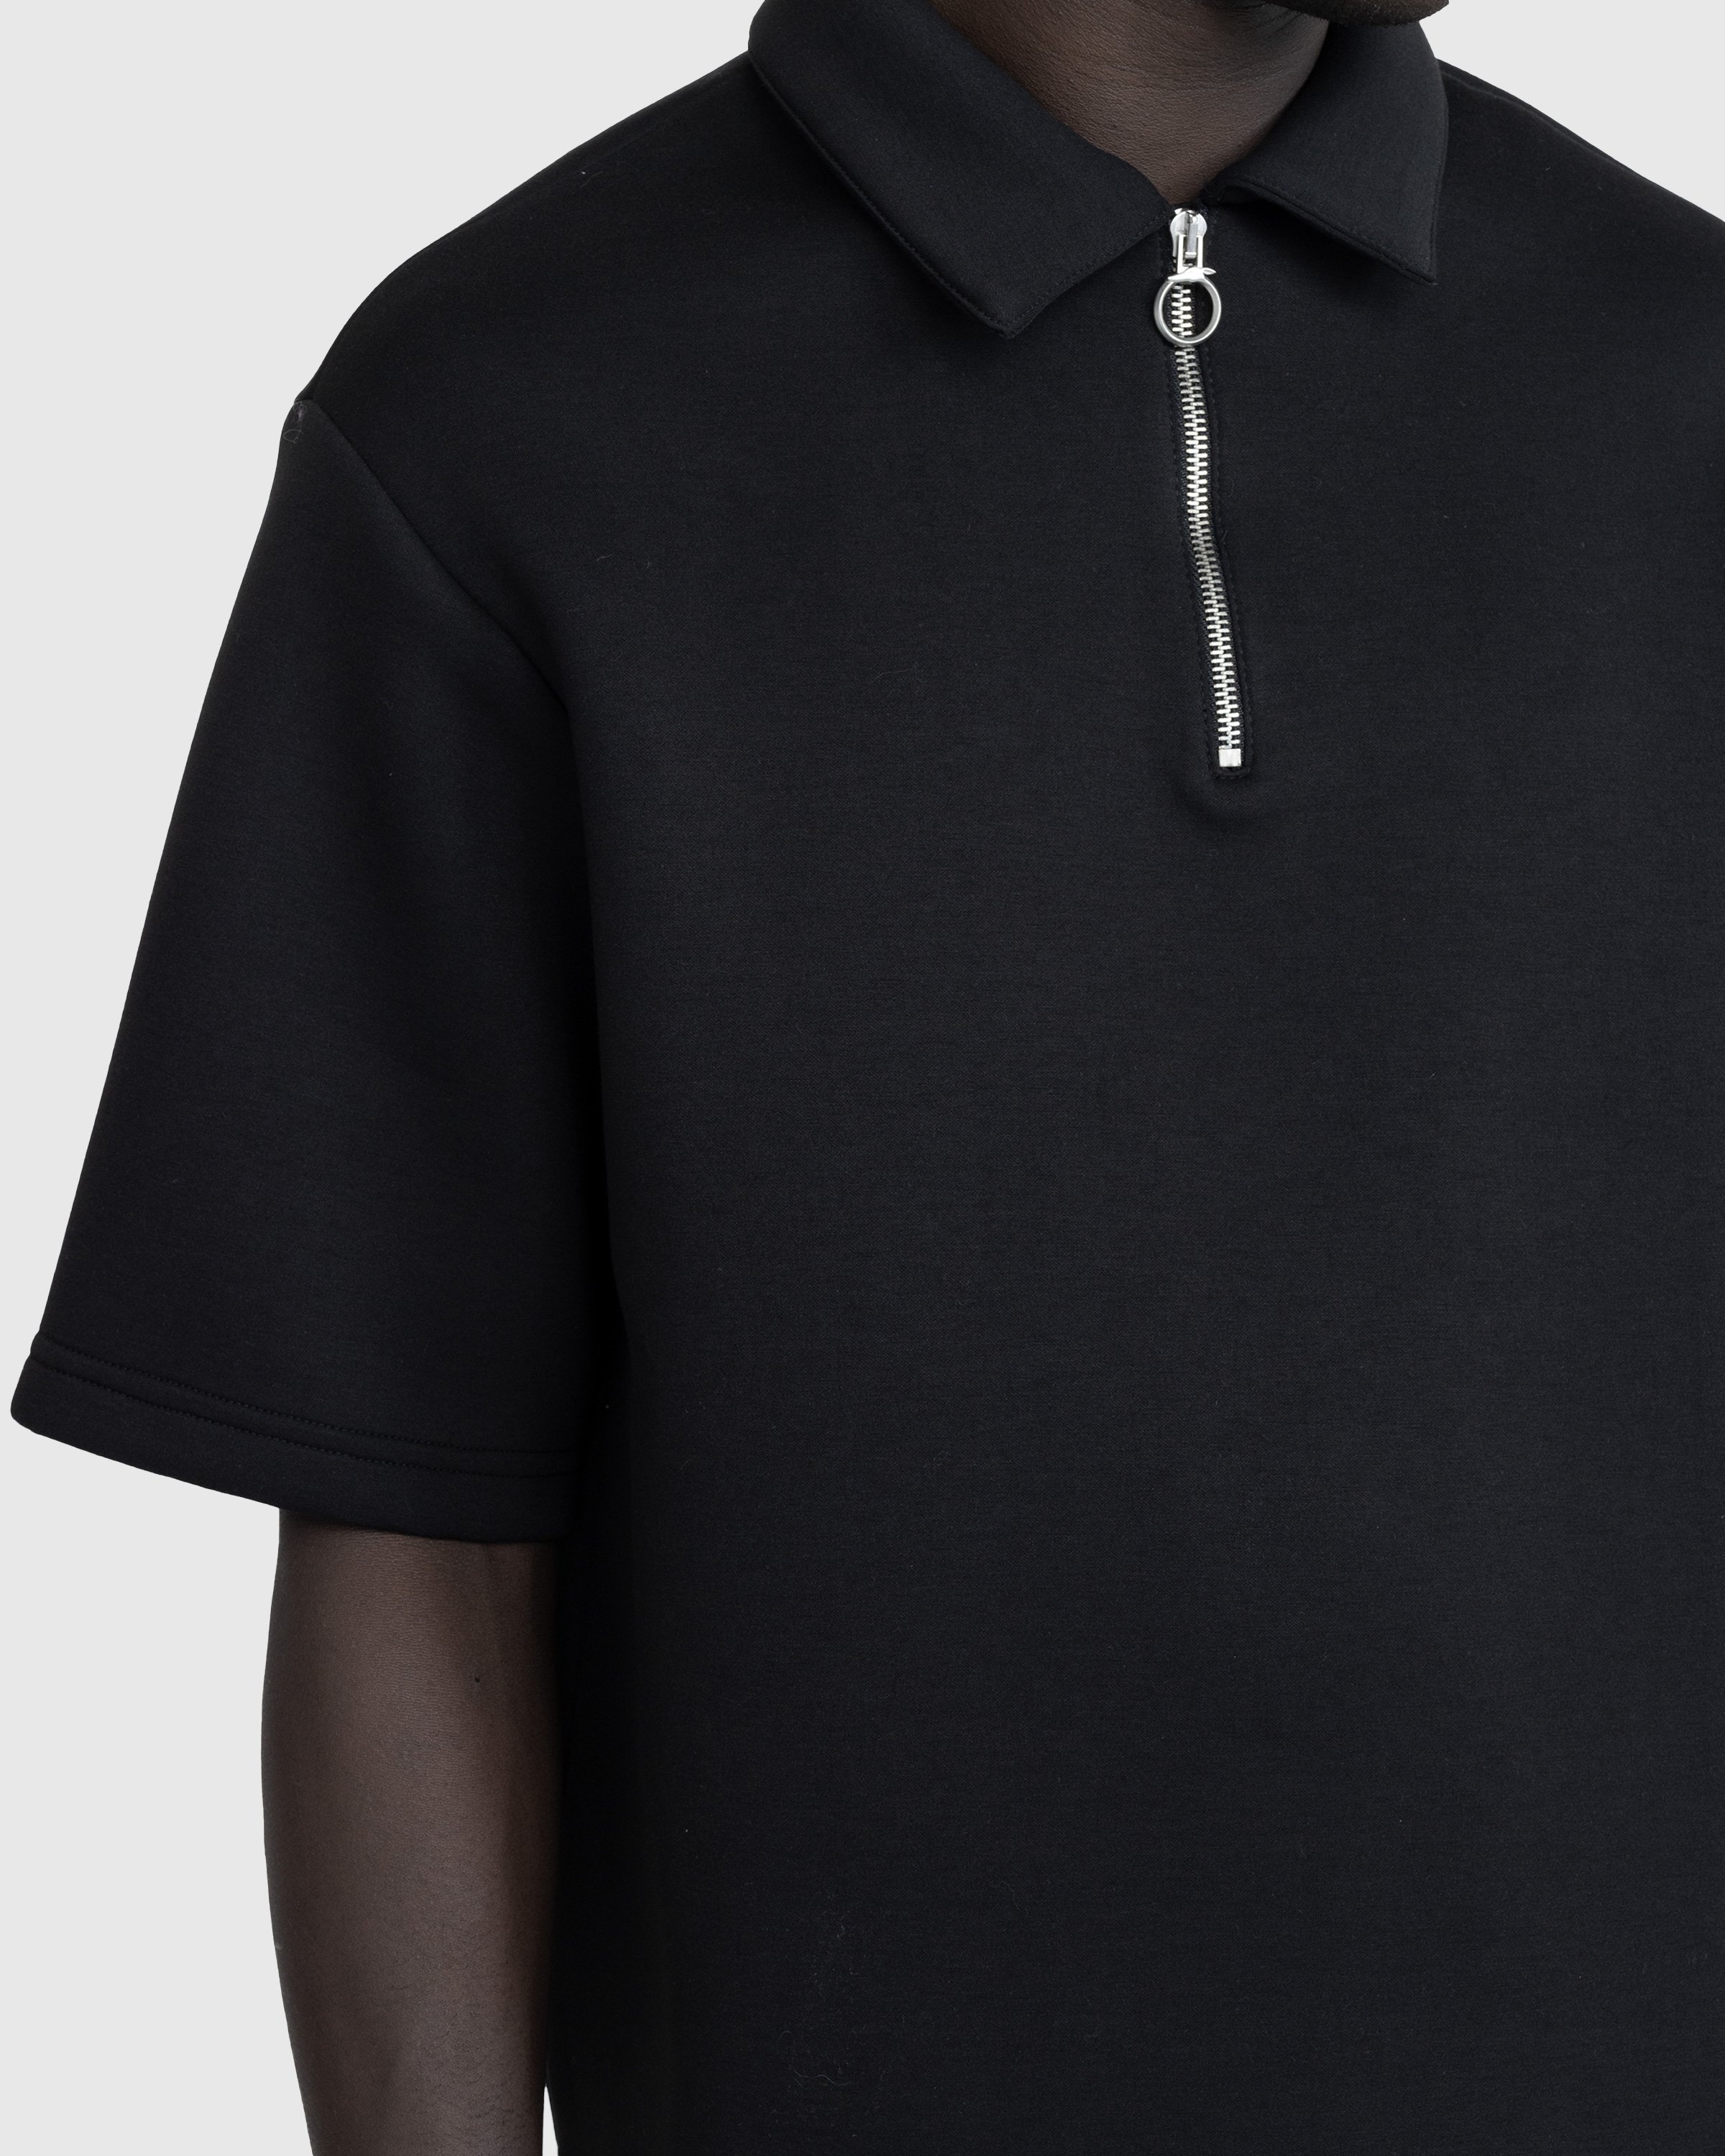 Trussardi – Quarter-Zip Scuba Polo Black  - Shirts - Black - Image 5